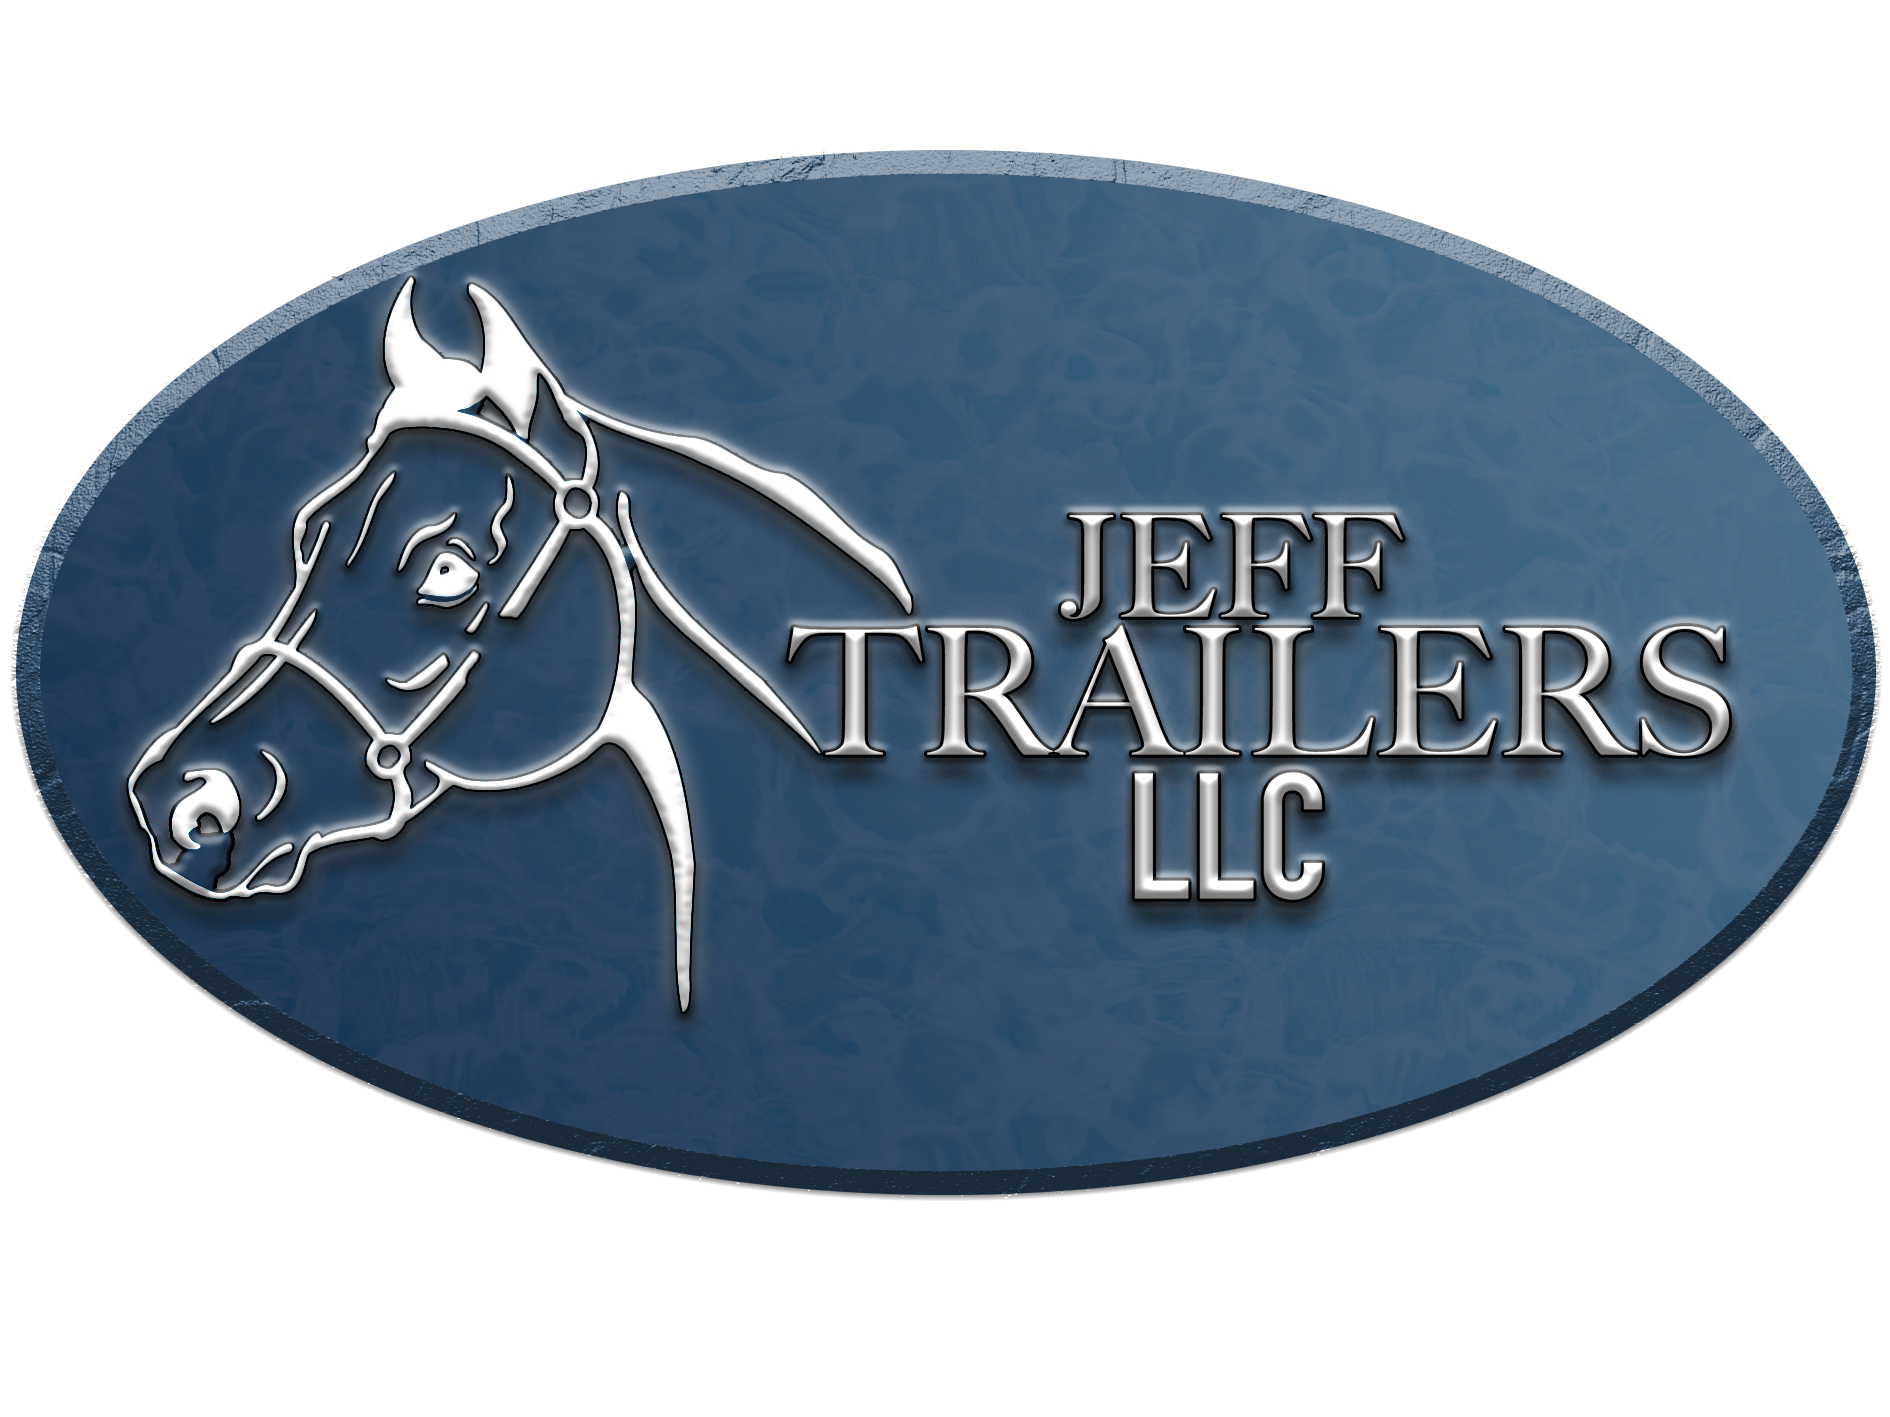 JEFFERSON TRAILERS LLC